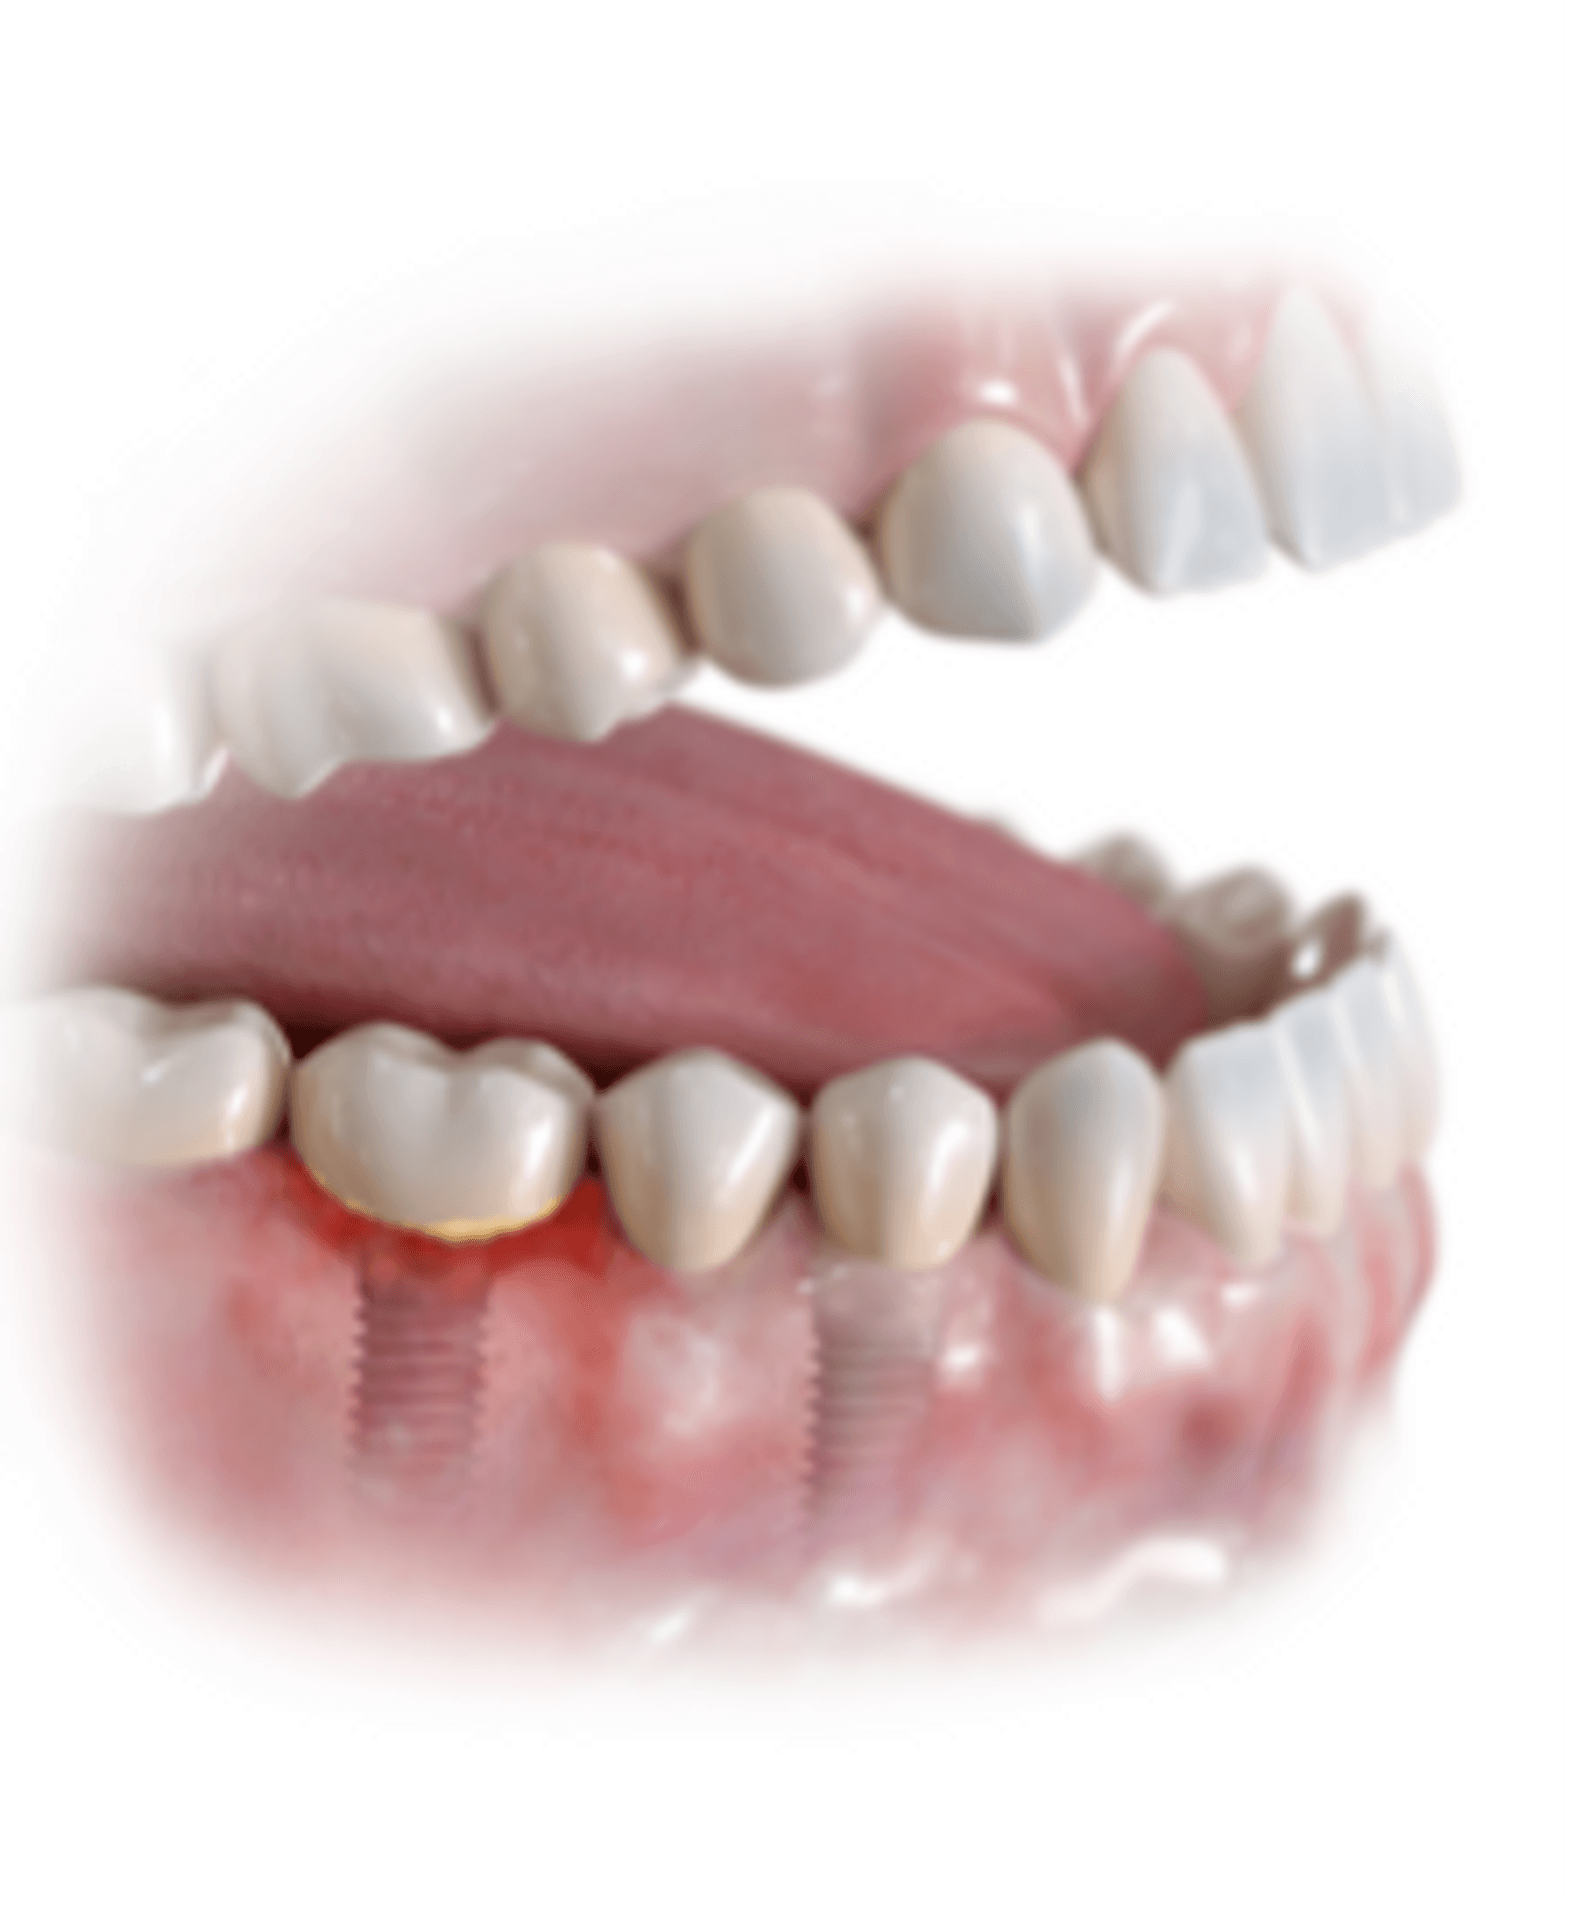  Leichte Entzündung um ein Zahnimplantat 